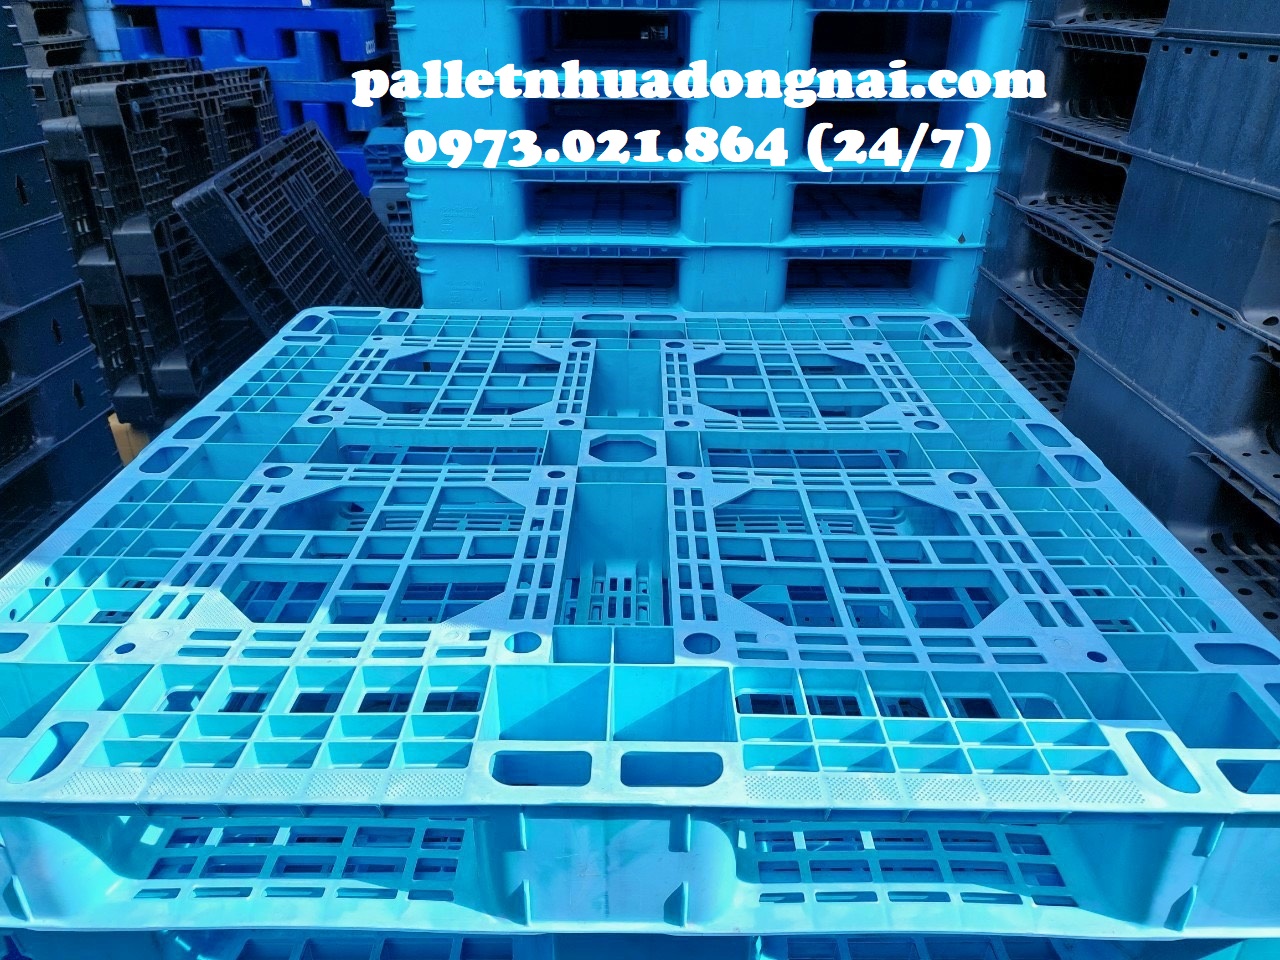 Pallet nhựa giá rẻ cạnh tranh, liên hệ 0973021864 (24/7)